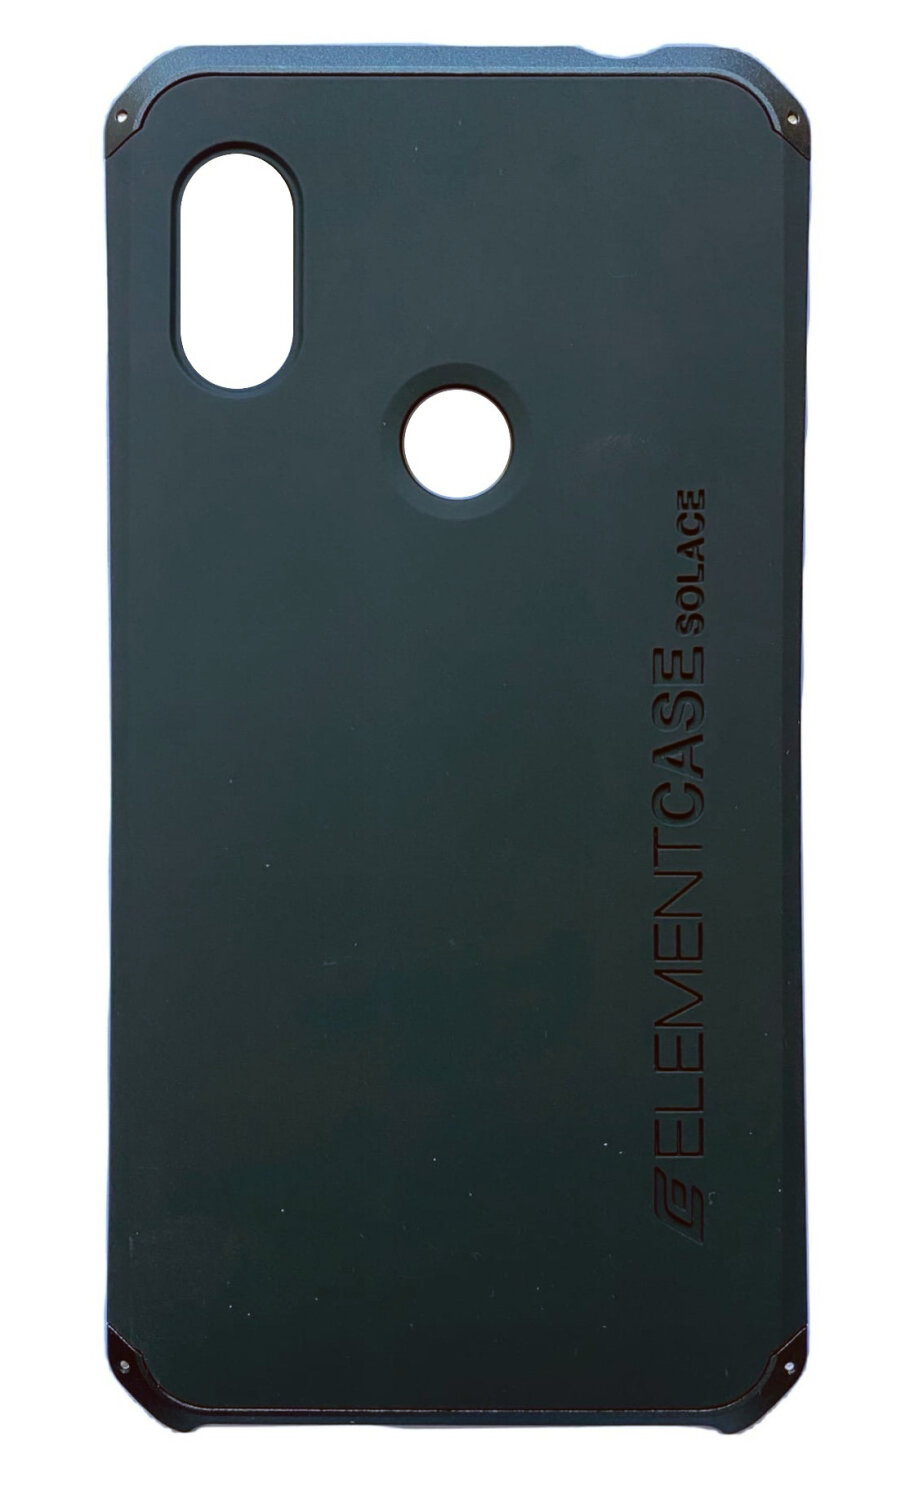 Чехол - накладка для Xiaomi Redmi Note 6 Pro/Note 6, Element Сase, противоударный, черный